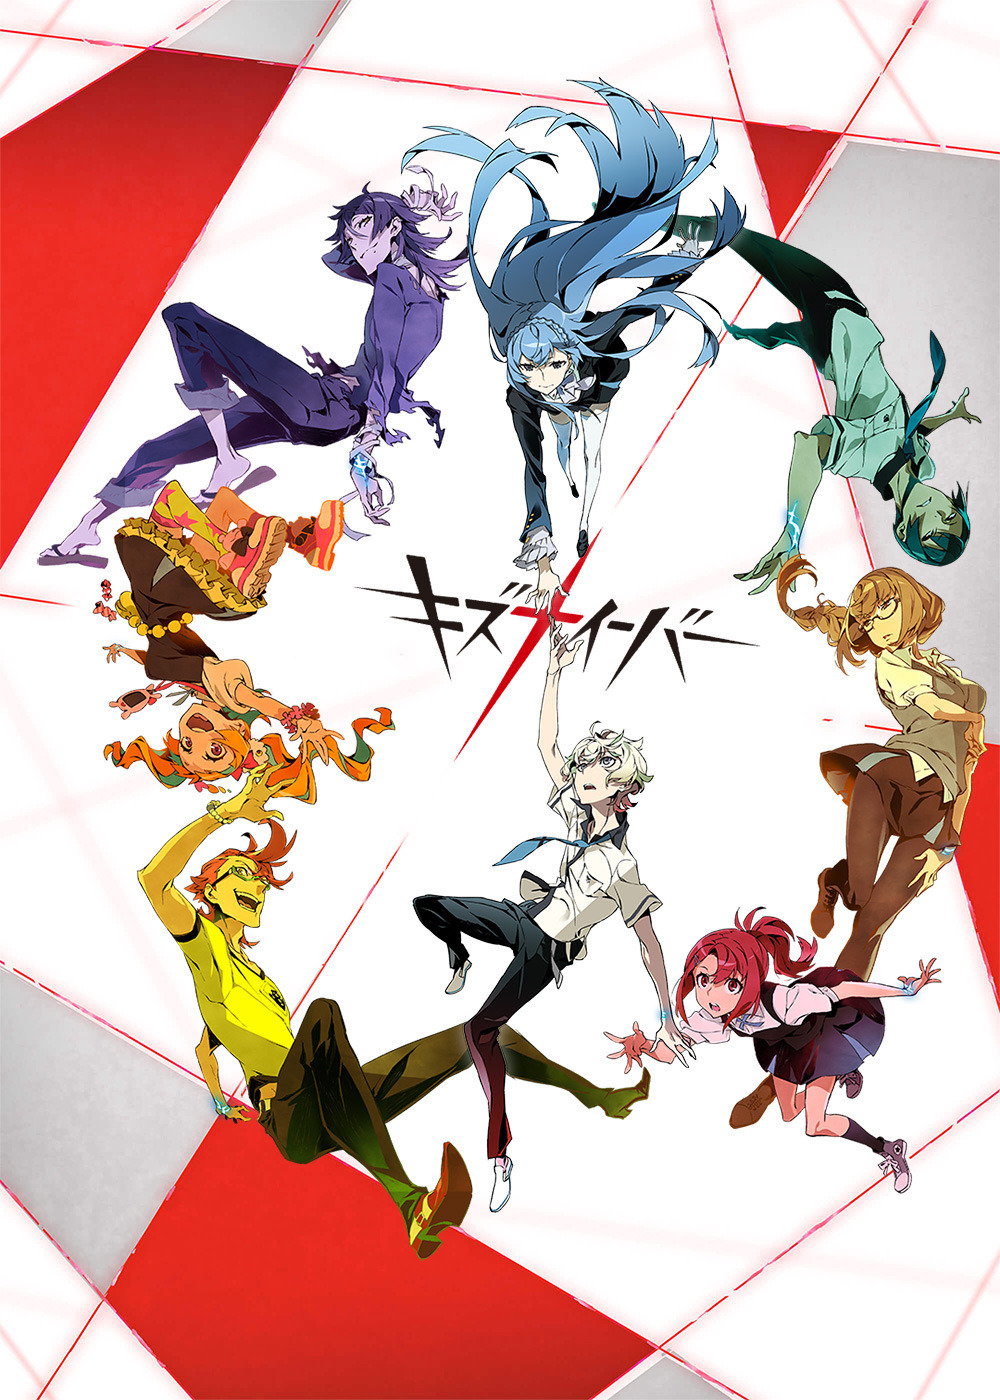 Anime, Nico, And Tenga Image - Kiznaiver Character Design, HD Png Download  - kindpng